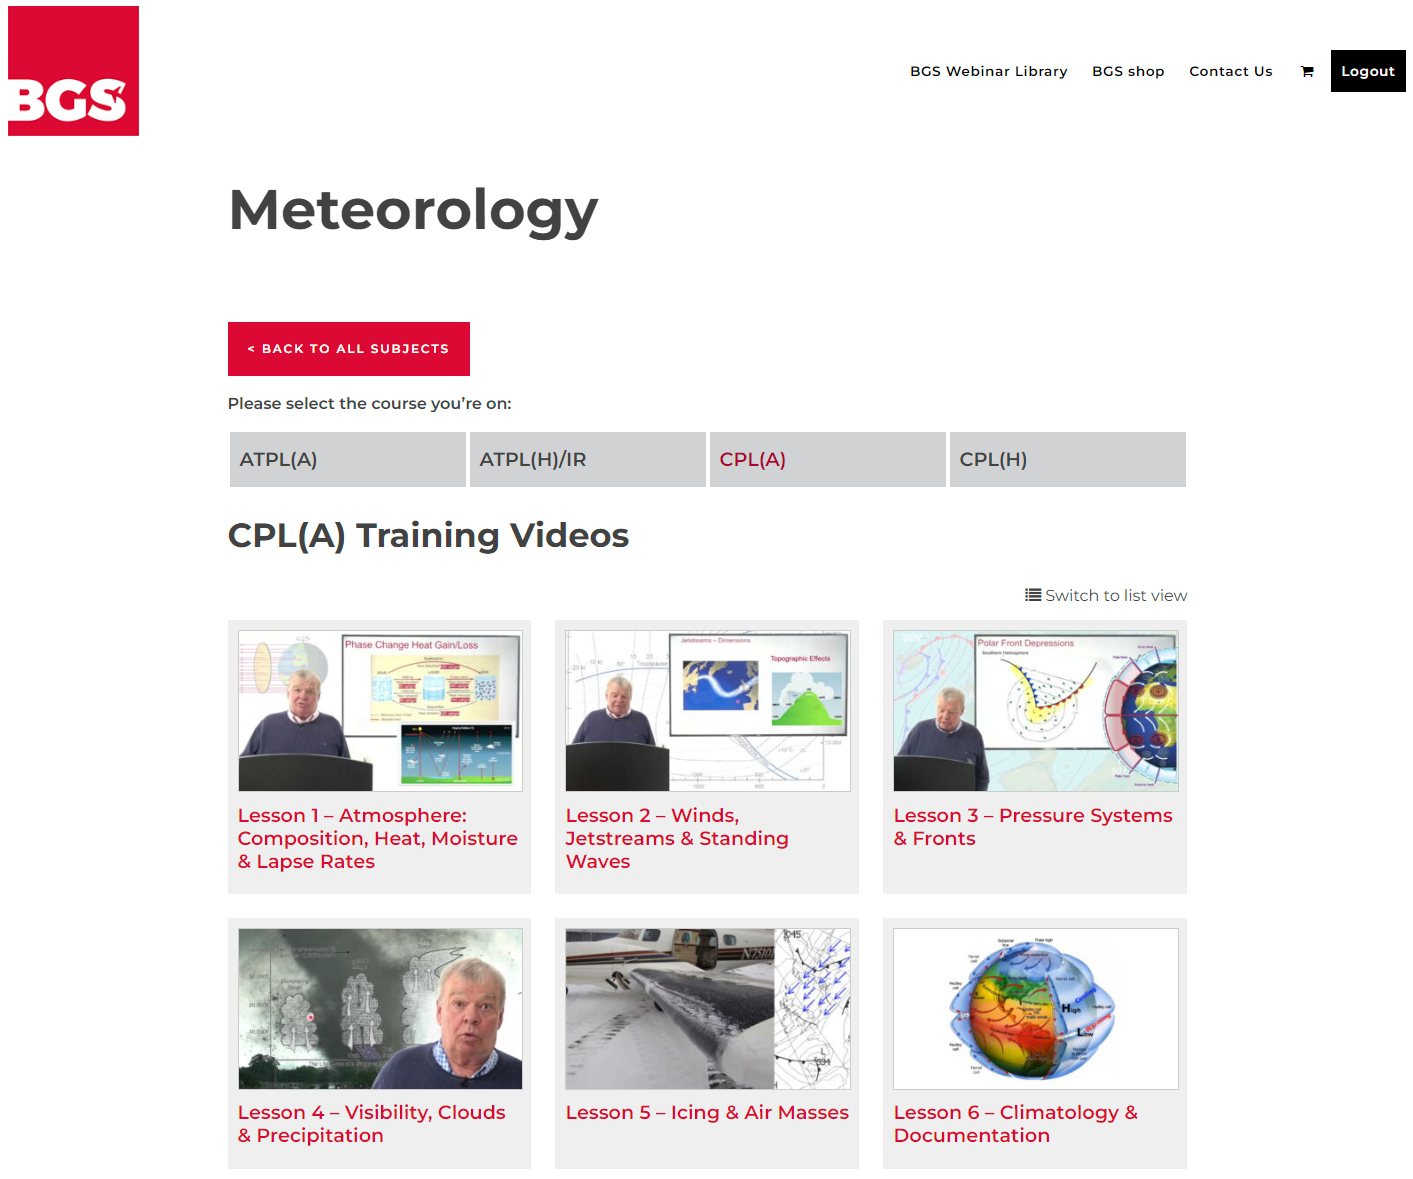 BGS Webinar Library - Meteorology